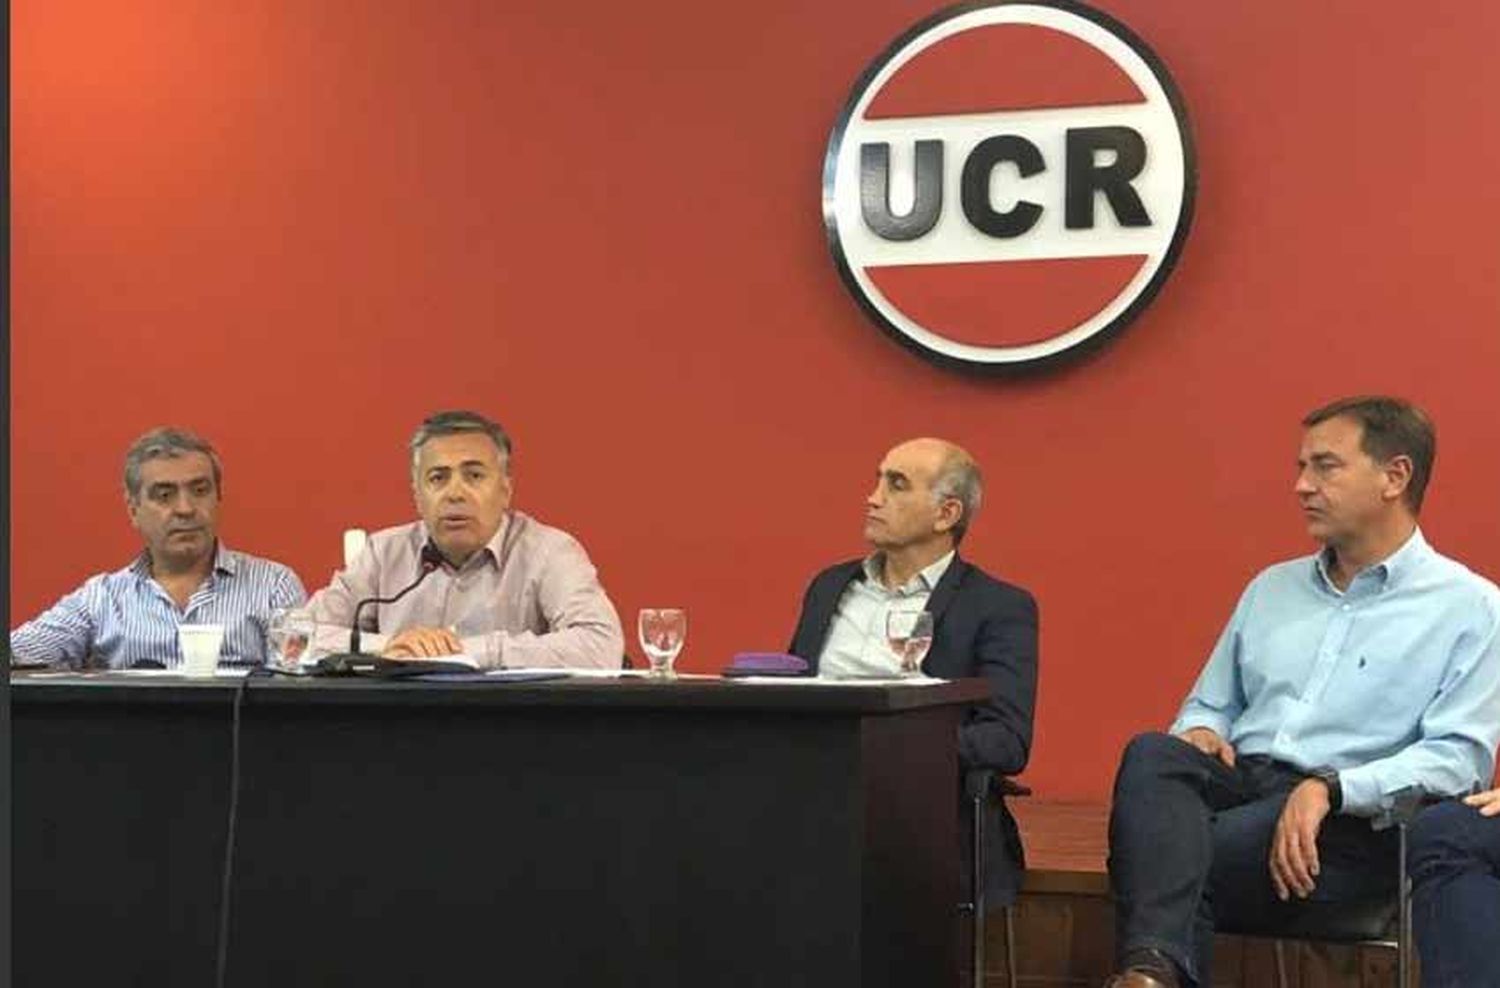 La UCR le reclamó al PRO un “trato igualitario” dentro de Cambiemos